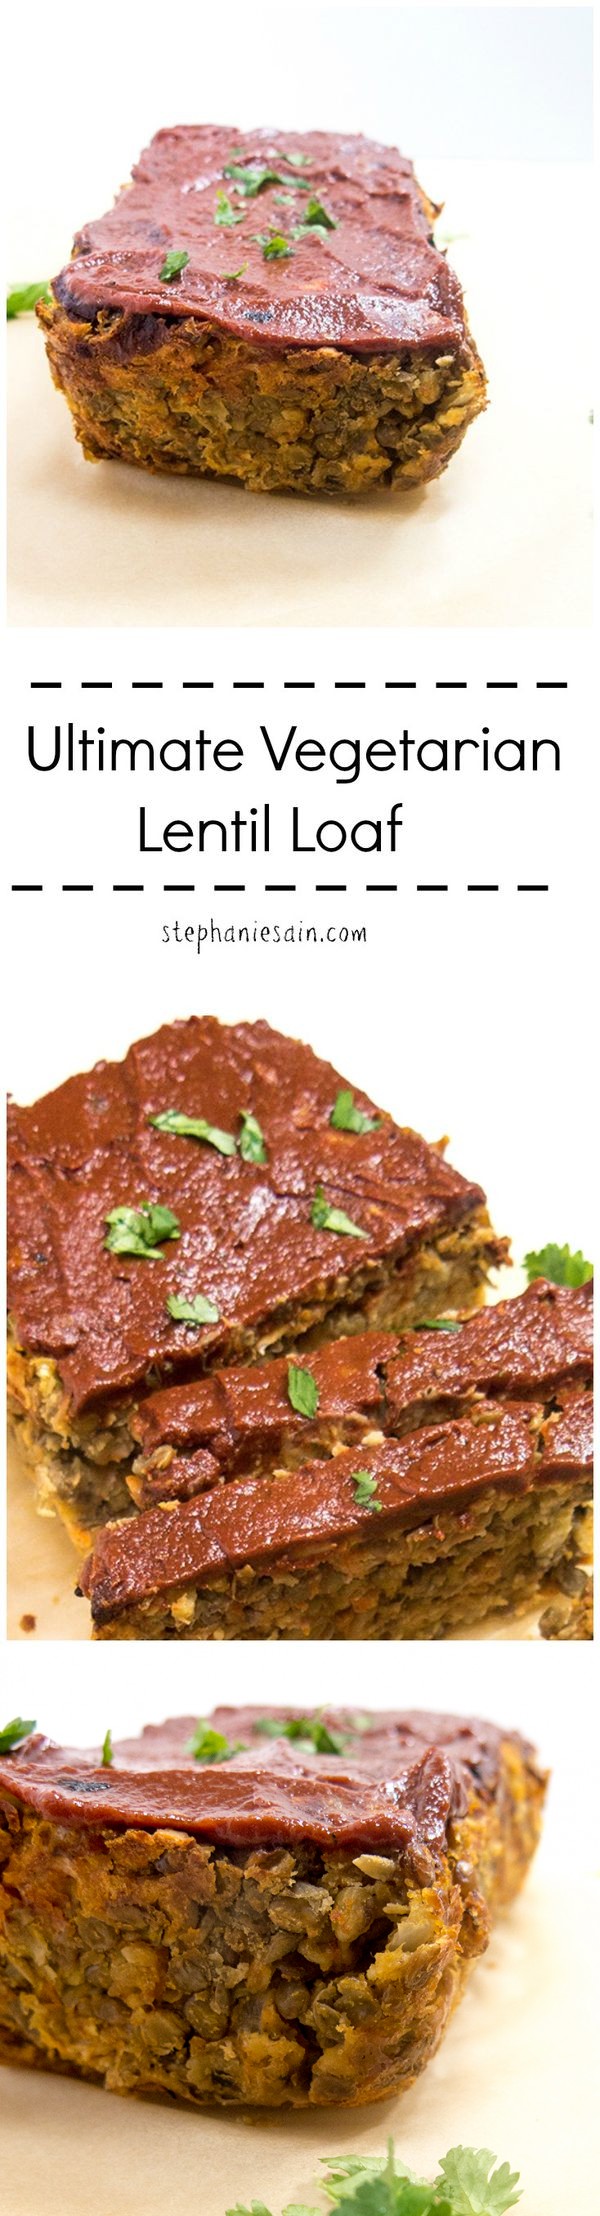 Ultimate Vegetarian Lentil Loaf